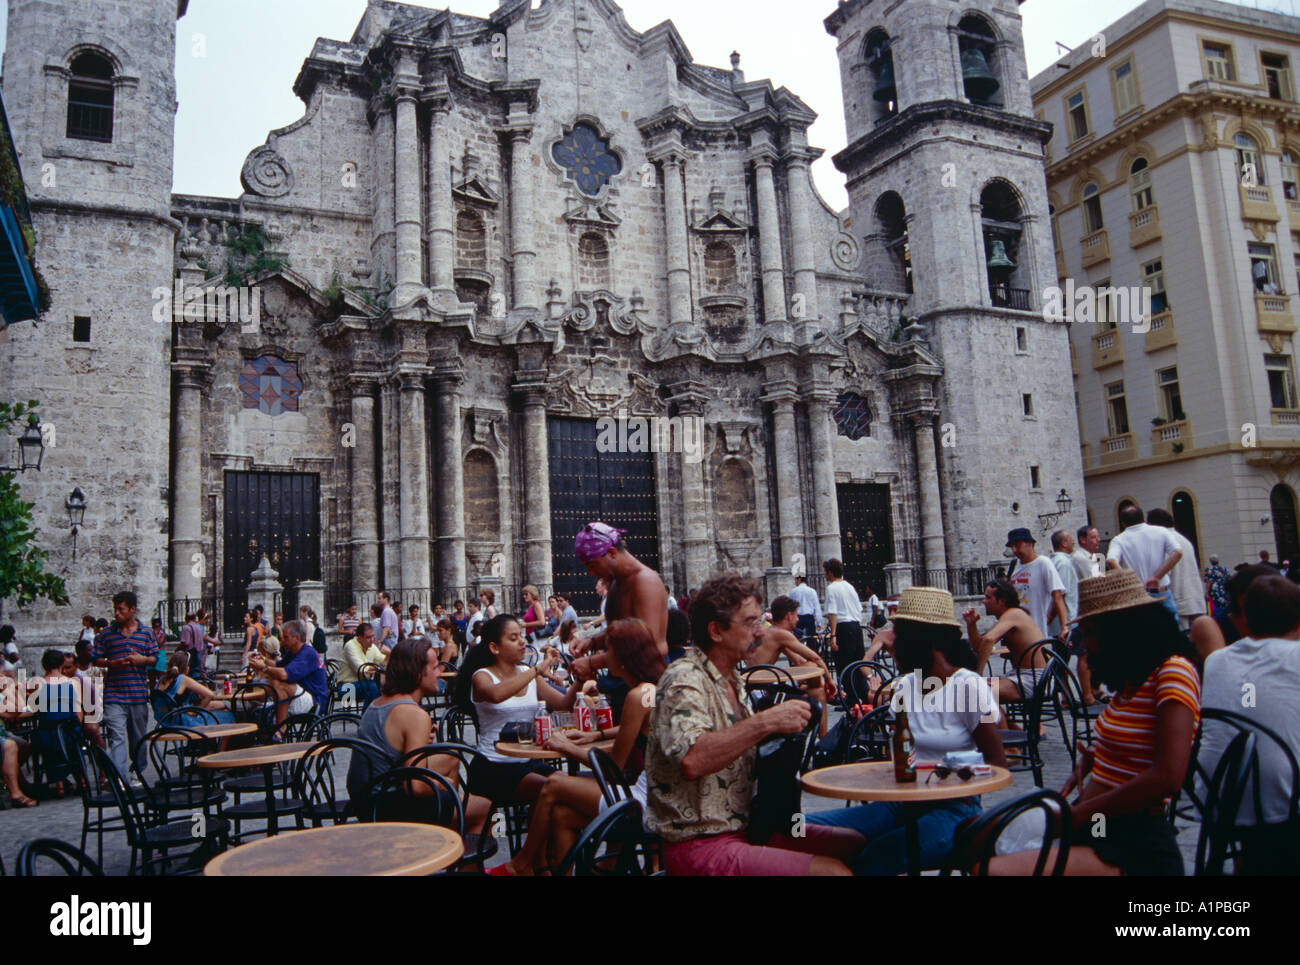 La Cattedrale di San Cristobal de la Habana, all Avana Vecchia, la Habana Vieja, costruito nel 1748 dall'architetto italiano Francesco Borromini Foto Stock